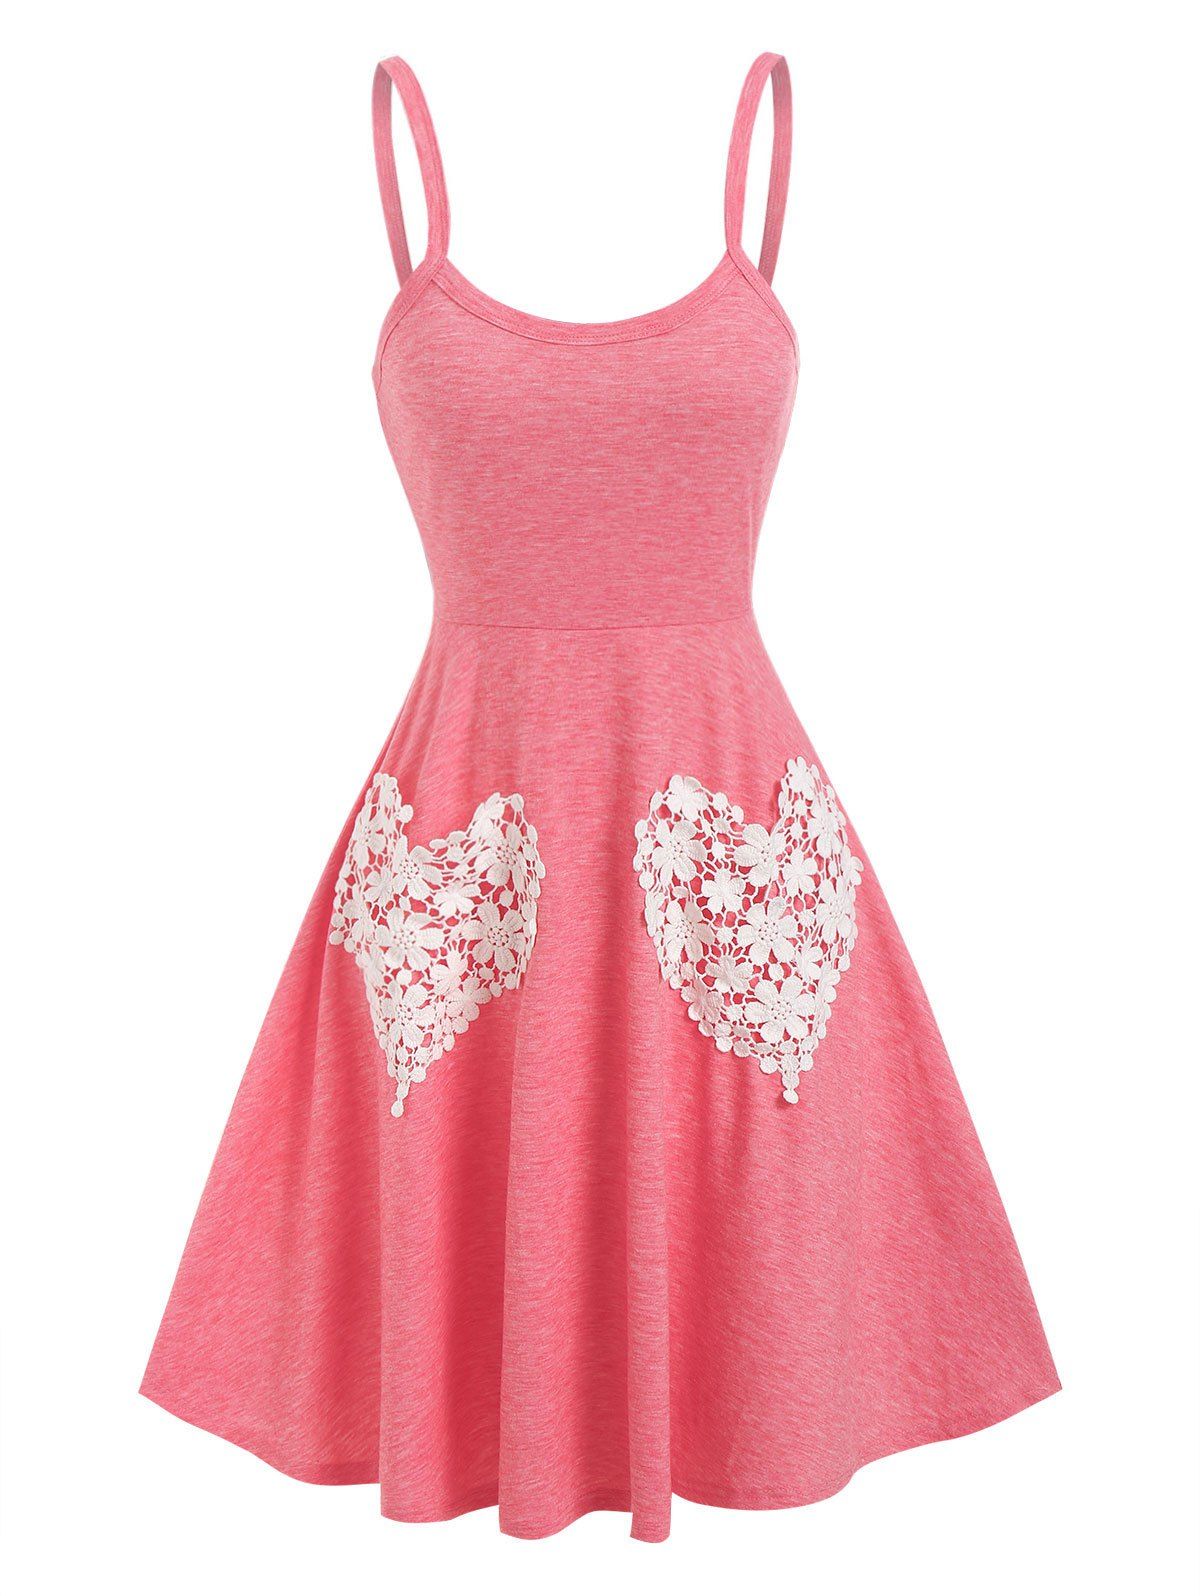 Flower Heart Lace Pockets Cami Dress - LIGHT PINK XXXL